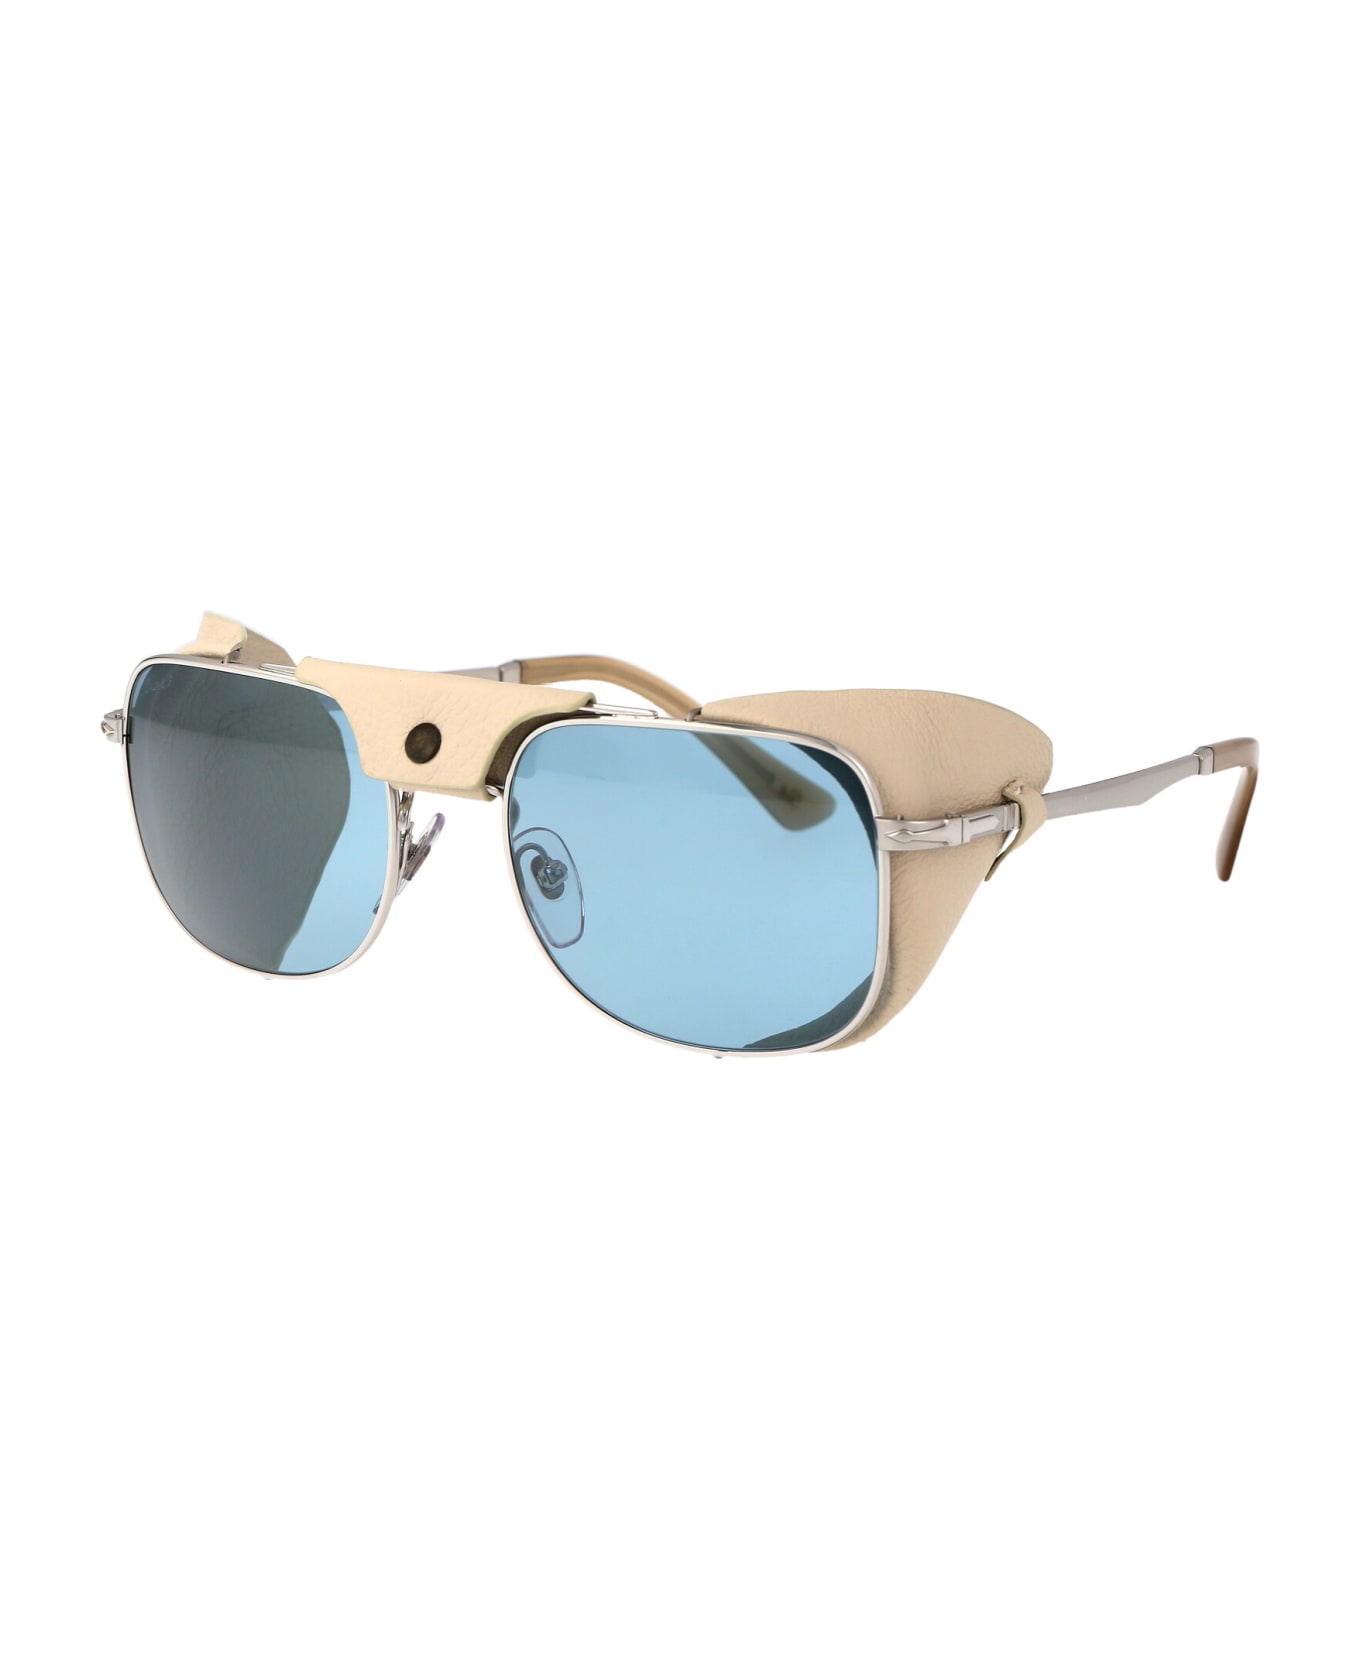 Persol 0po1013sz Sunglasses - 1155P1 Silver